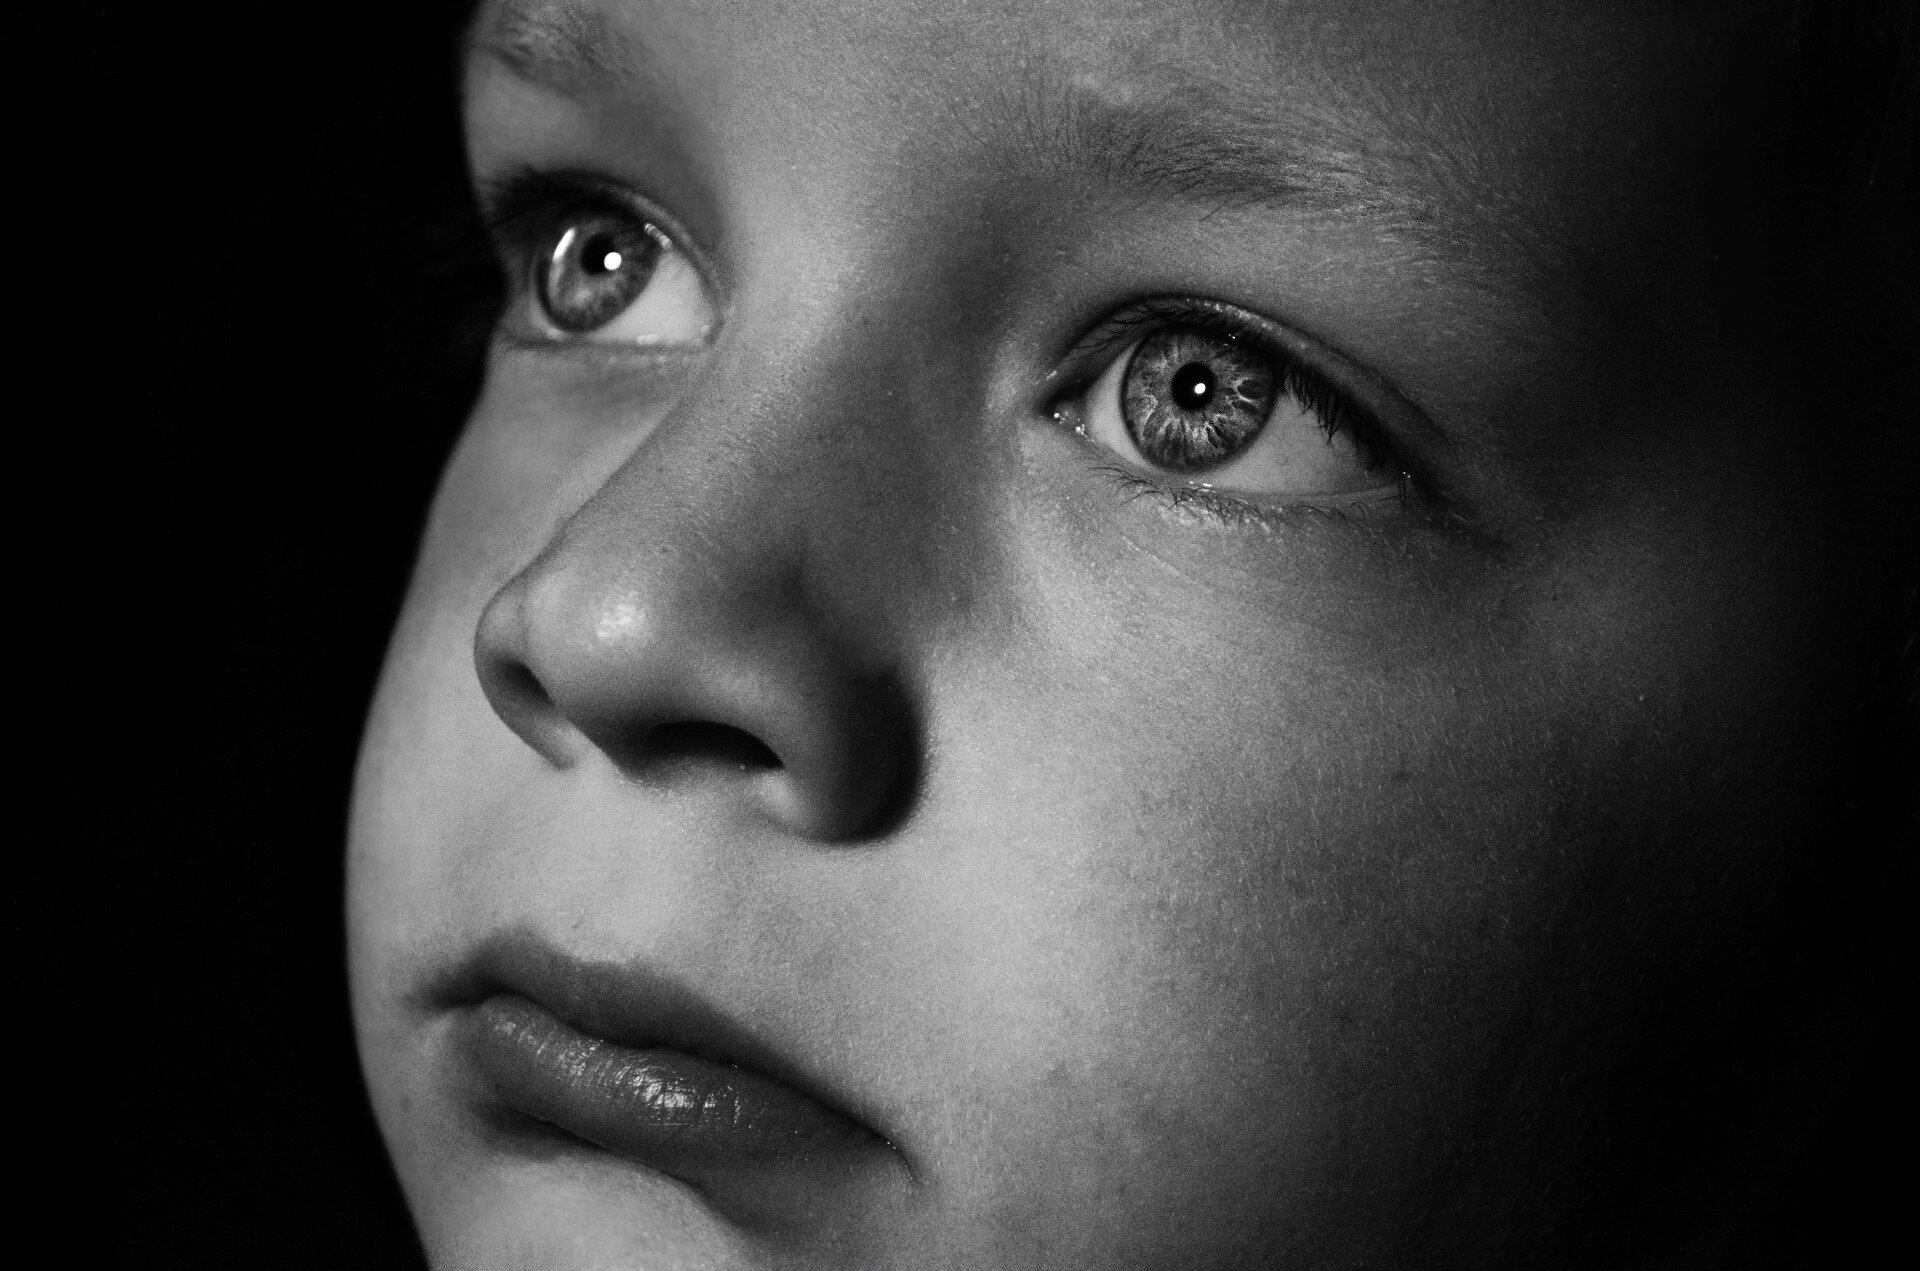 Smutna, zatroskana twarz małego chłopca z oczami patrzącymi w dal, na czarnym tle.